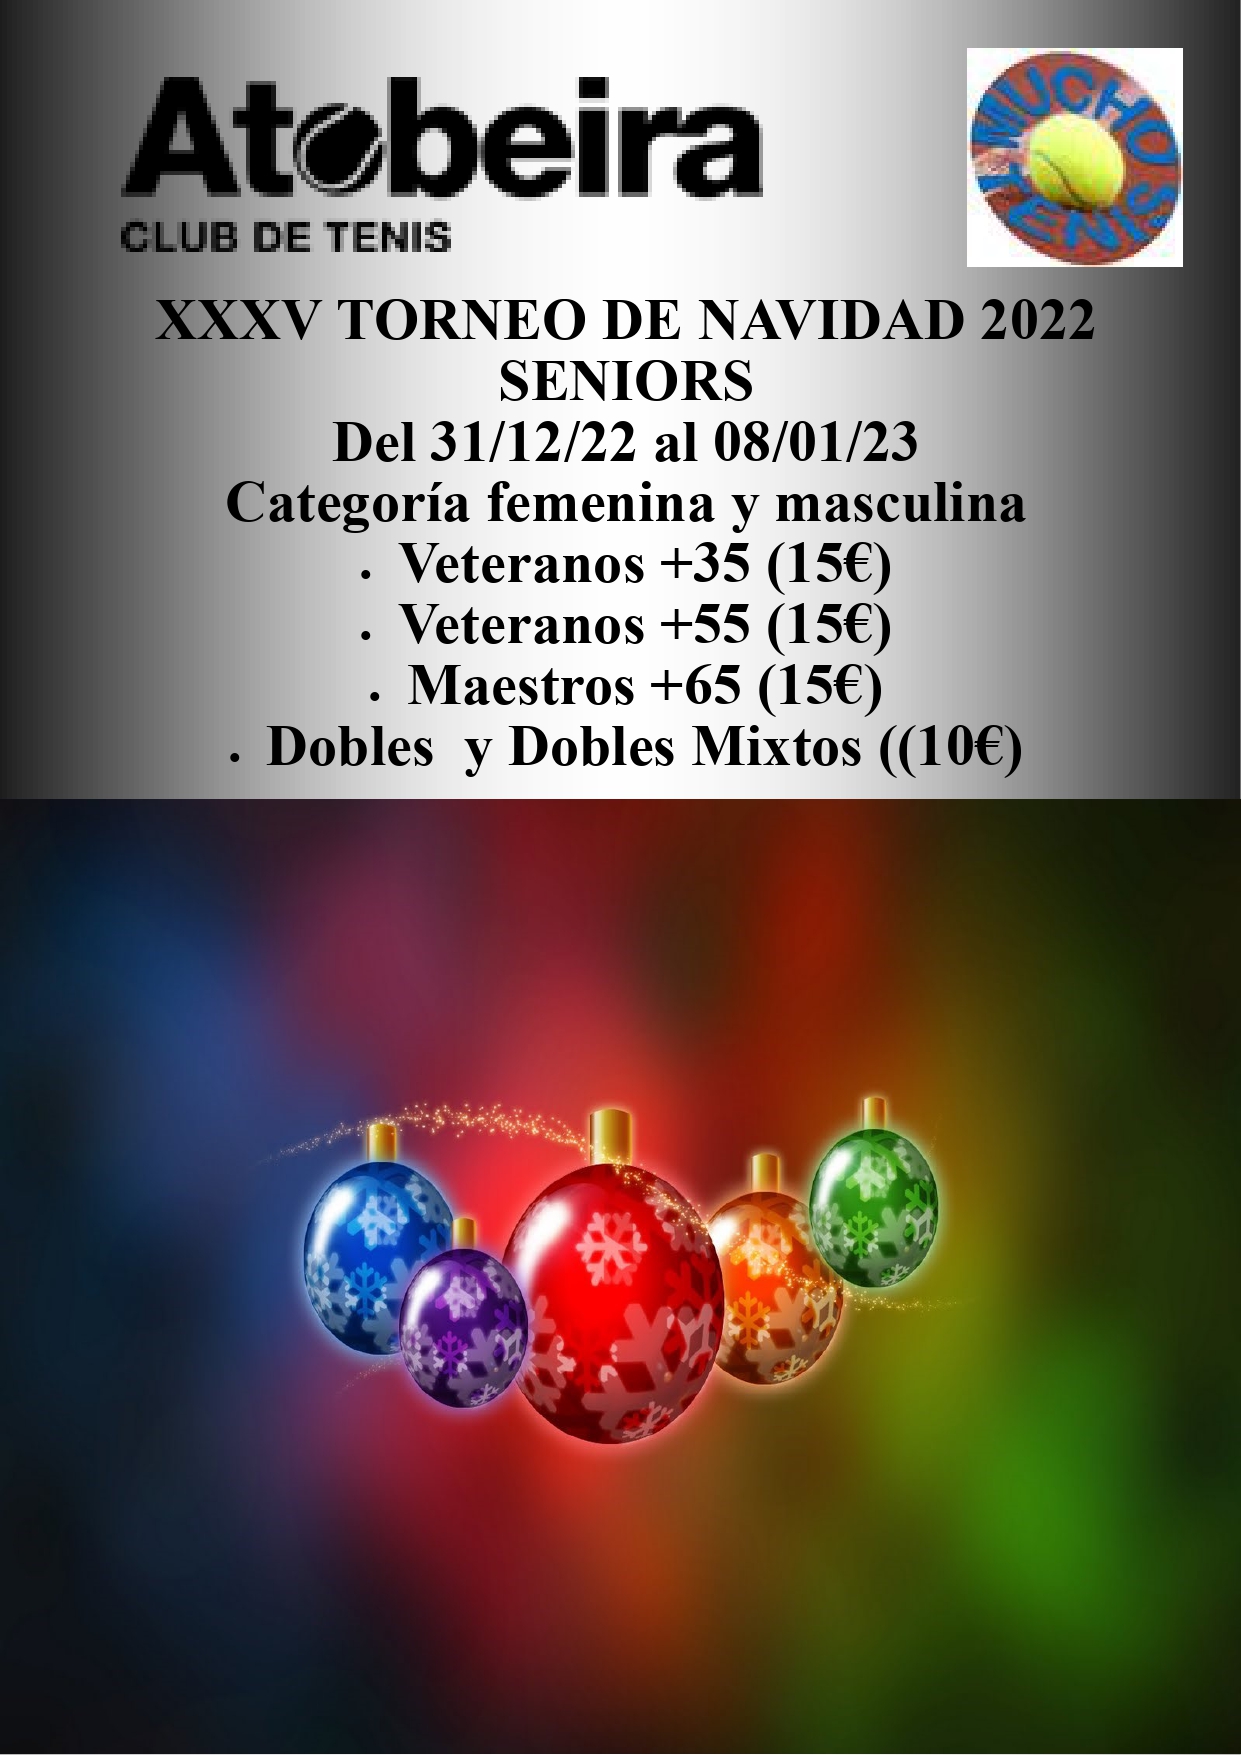 Cartel del XXXV Torneo de Navidad Senior A Tobeira 2022